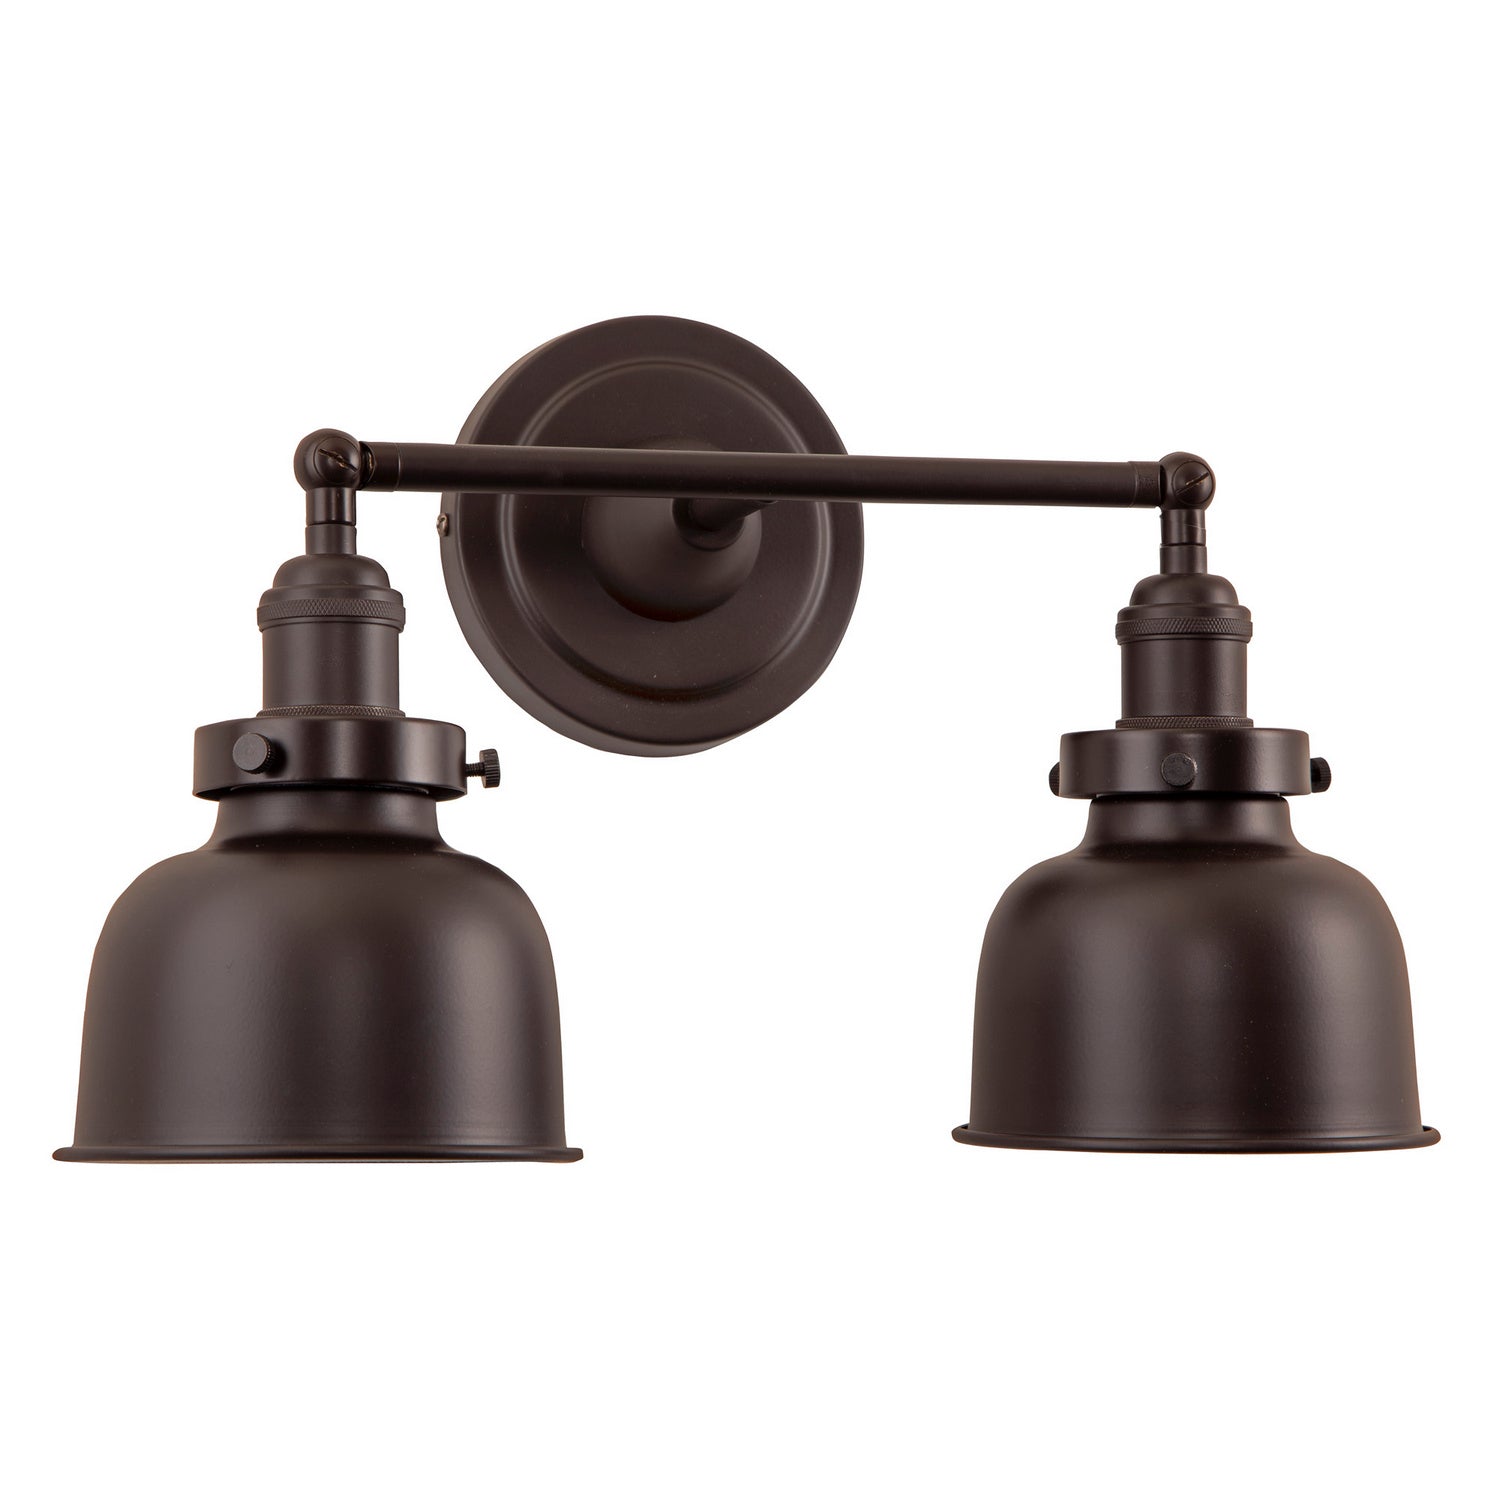 JVI Designs - 1252-08 M2 - Two Light Vanity - Soho - Oil Rubbed Bronze